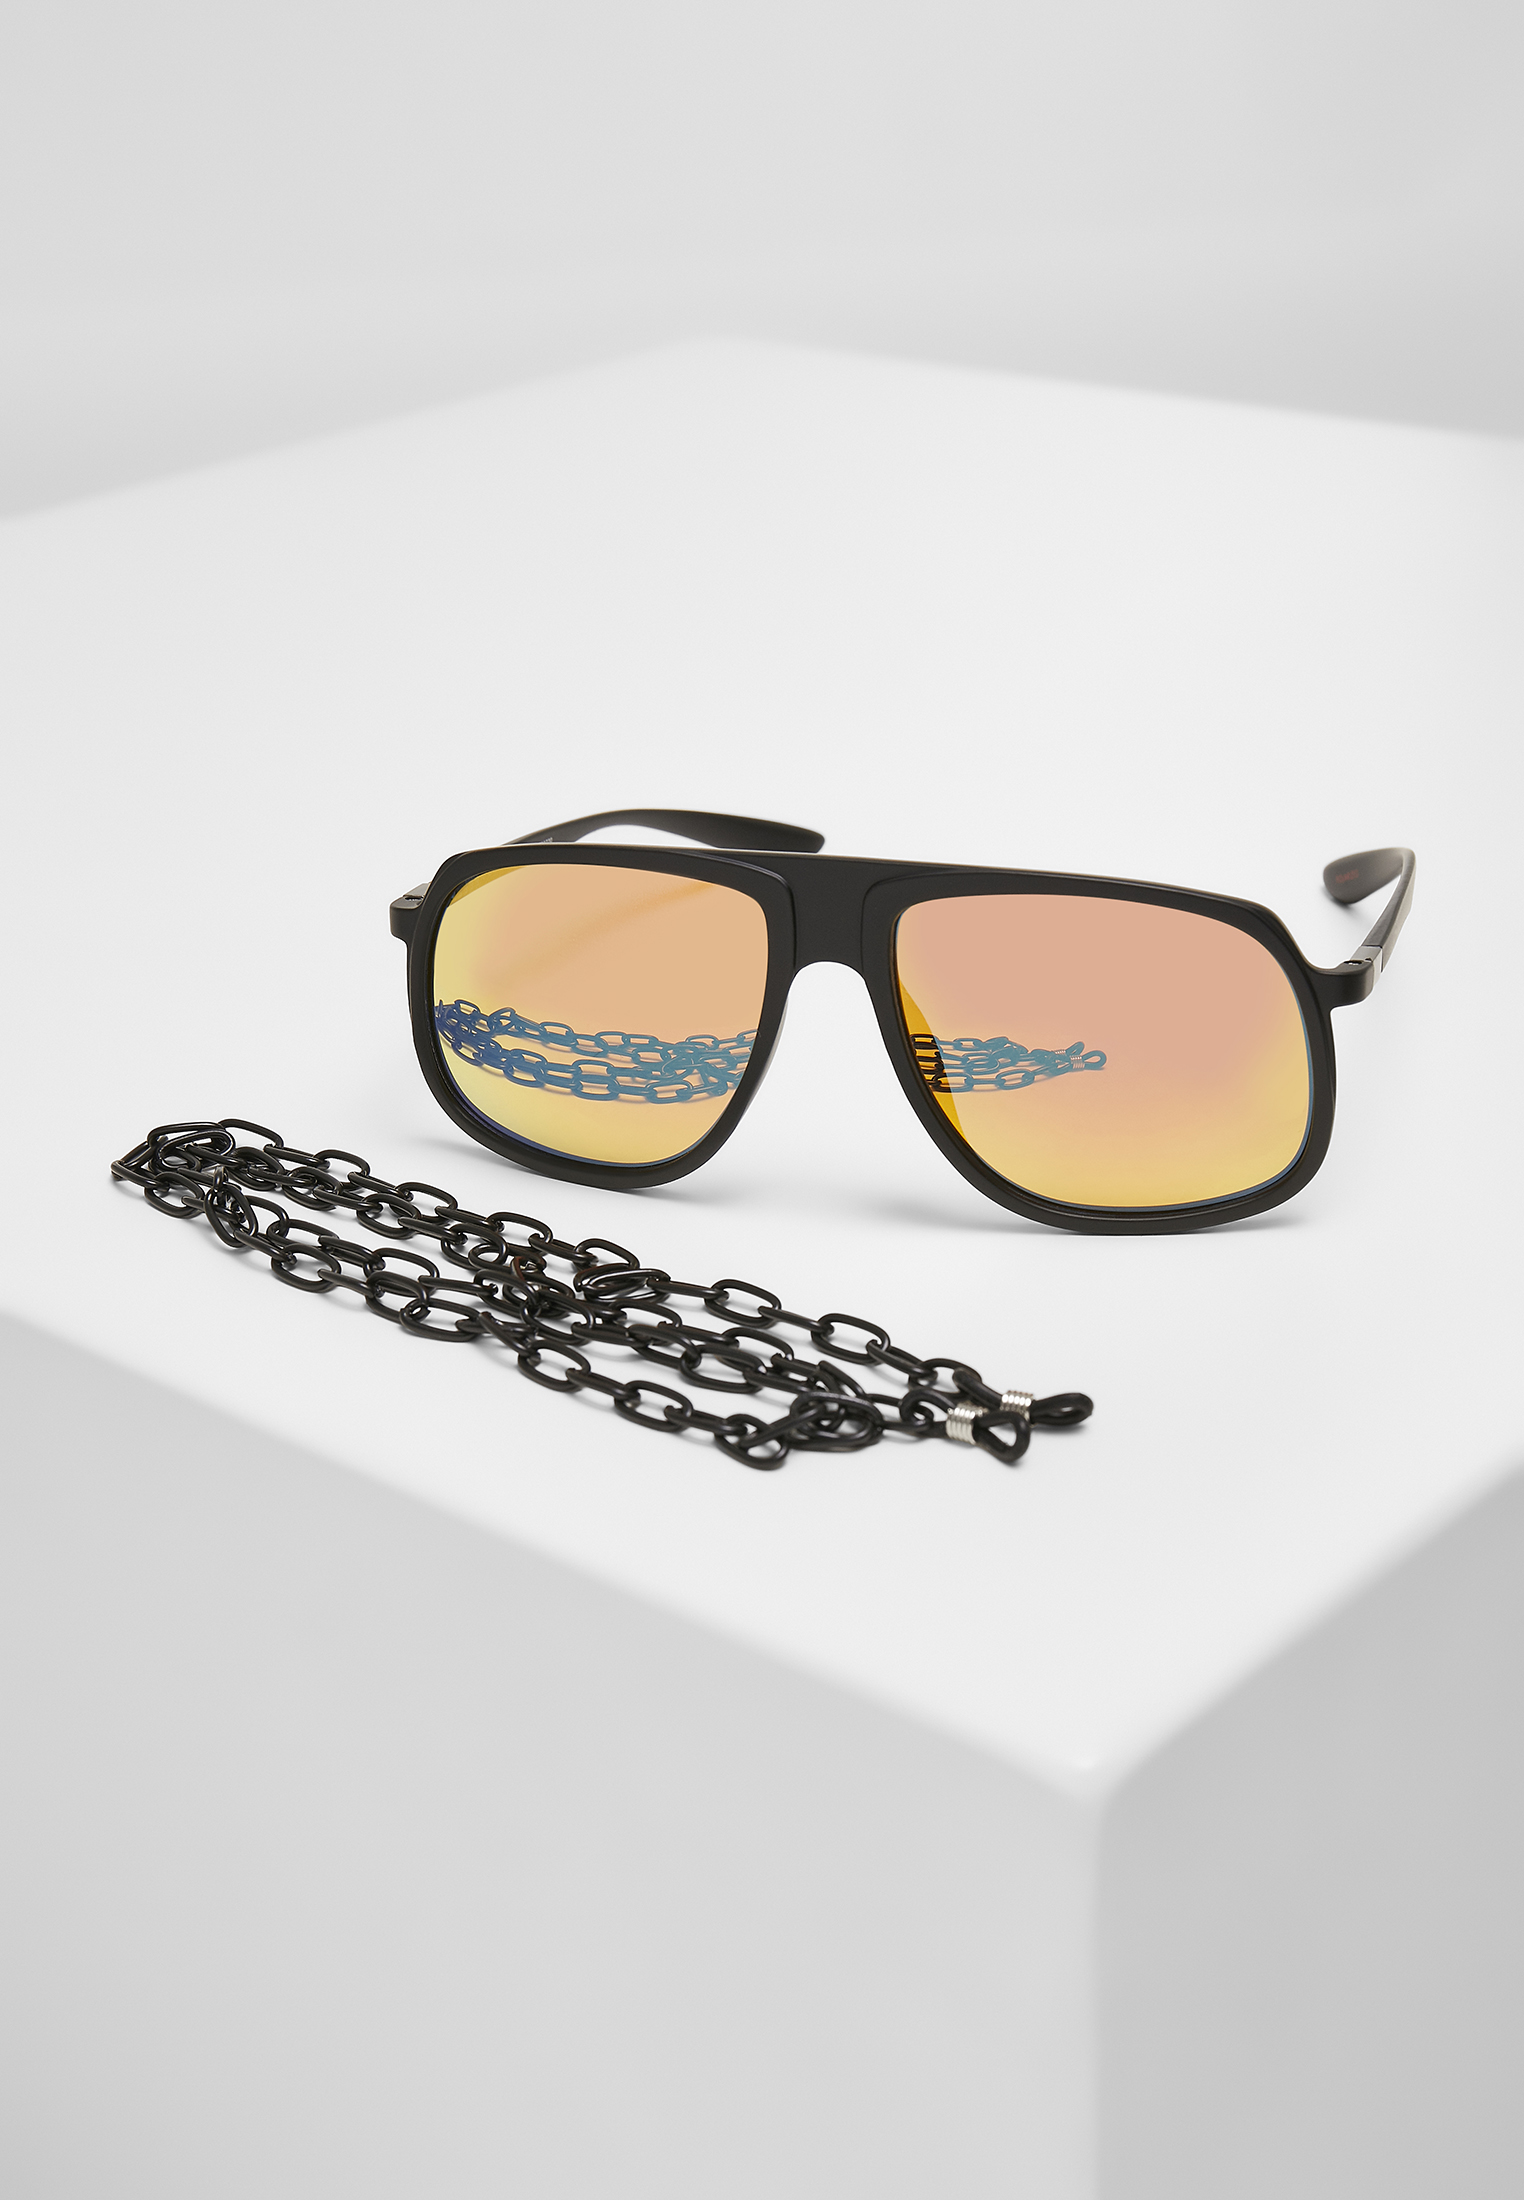 Sonnenbrillen 107 Chain Sunglasses Retro in Farbe blk/yellow